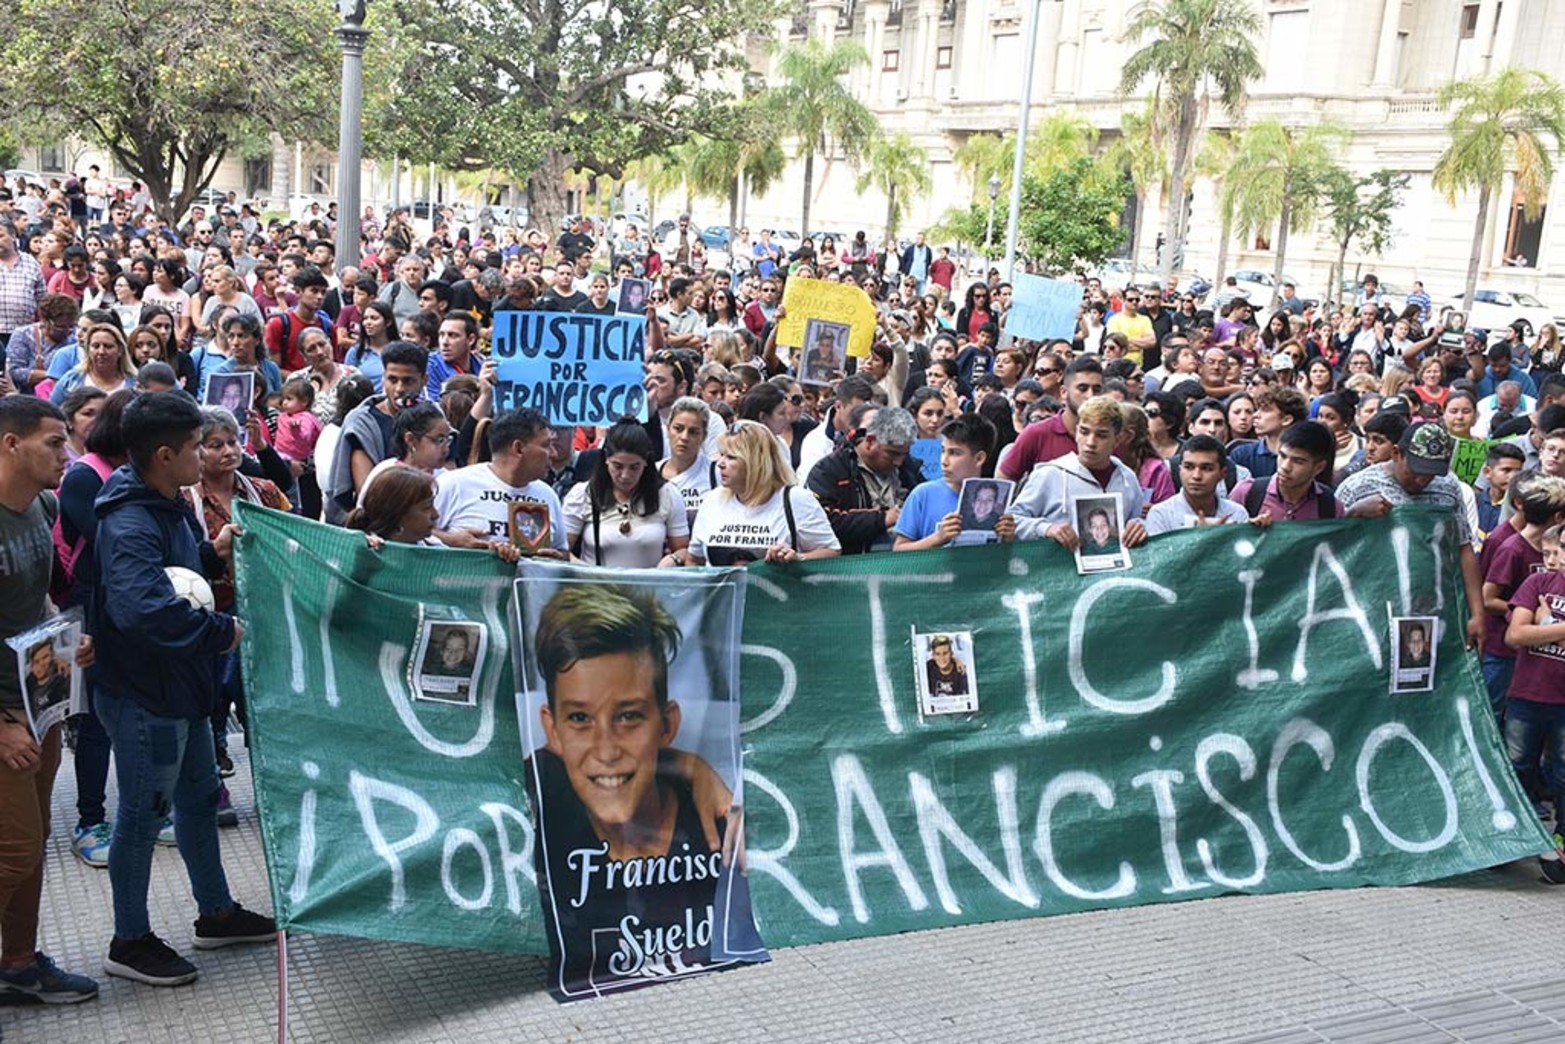 La noche del 13 de mayo, Francisco Sueldo murió en las calles de barrio María Selva, cuando un conductor fuera de control atropelló el auto de sus padres. Su familia espera justicia.